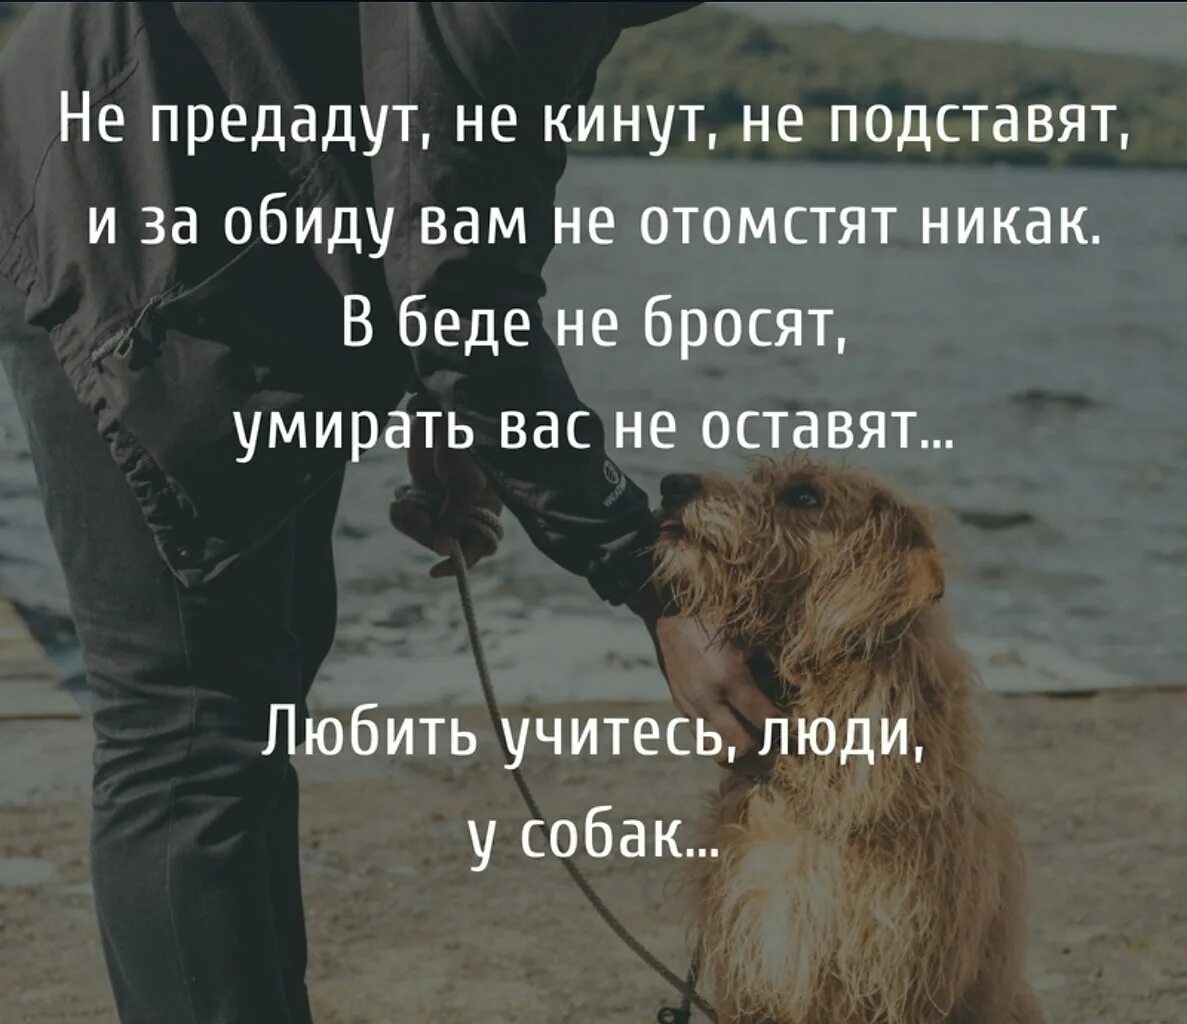 Собака и человек стали друзьями. Цитаты про собак. Афоризмы про собак и людей. Собака и человек цитаты. Любите животных цитаты.